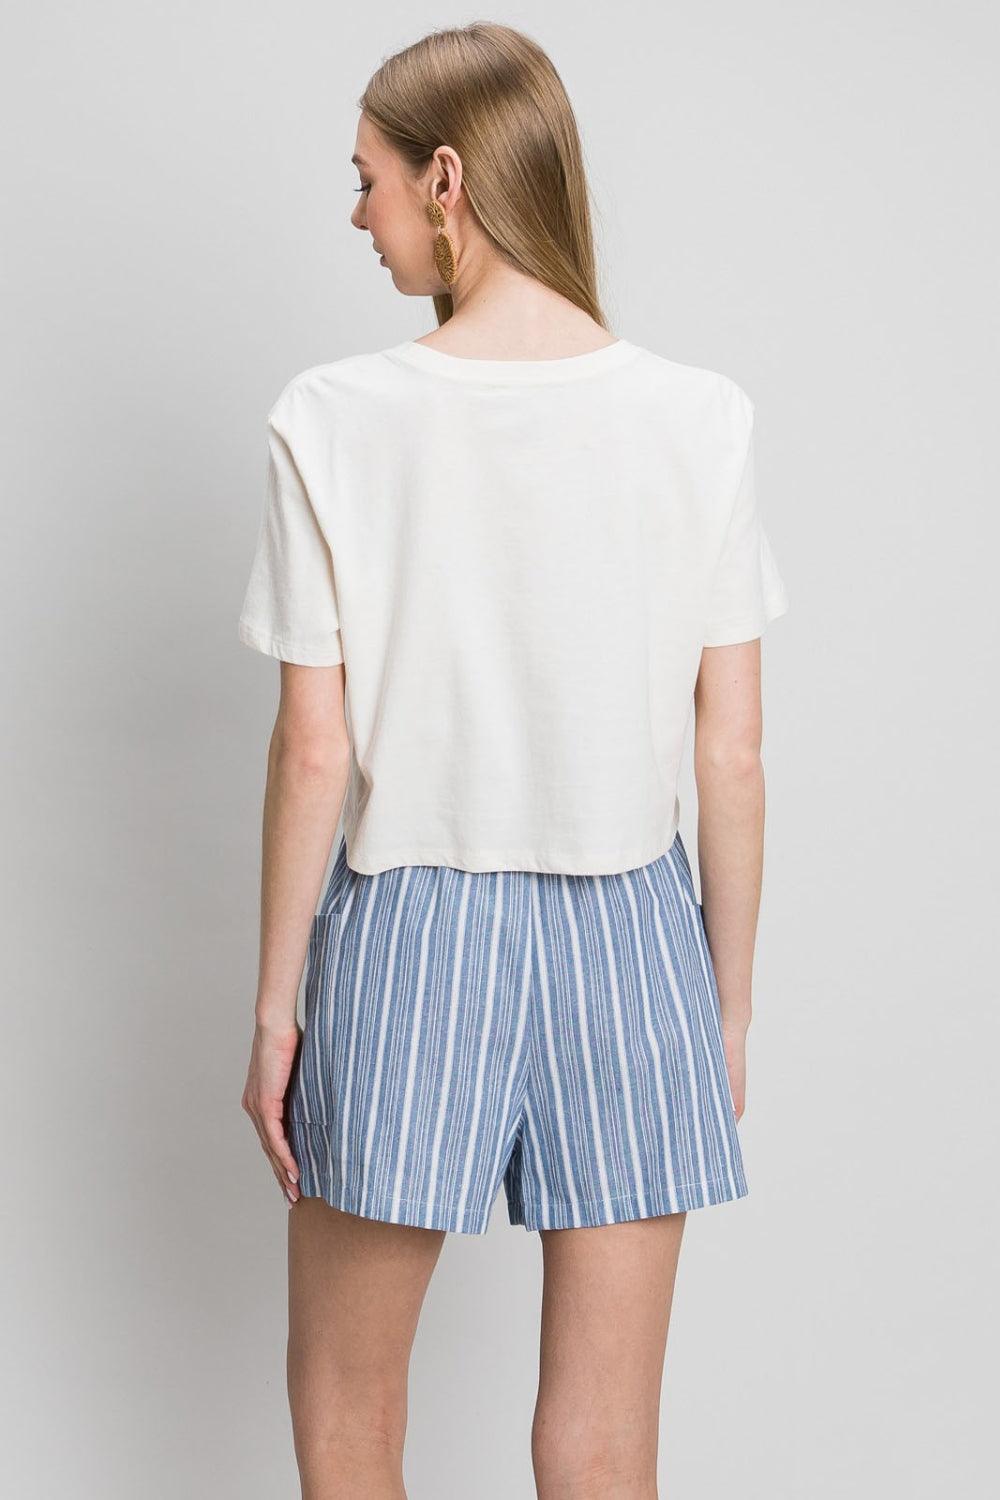 Women's Shorts Cotton Bleu by Nu Label Yarn Dye Striped Shorts